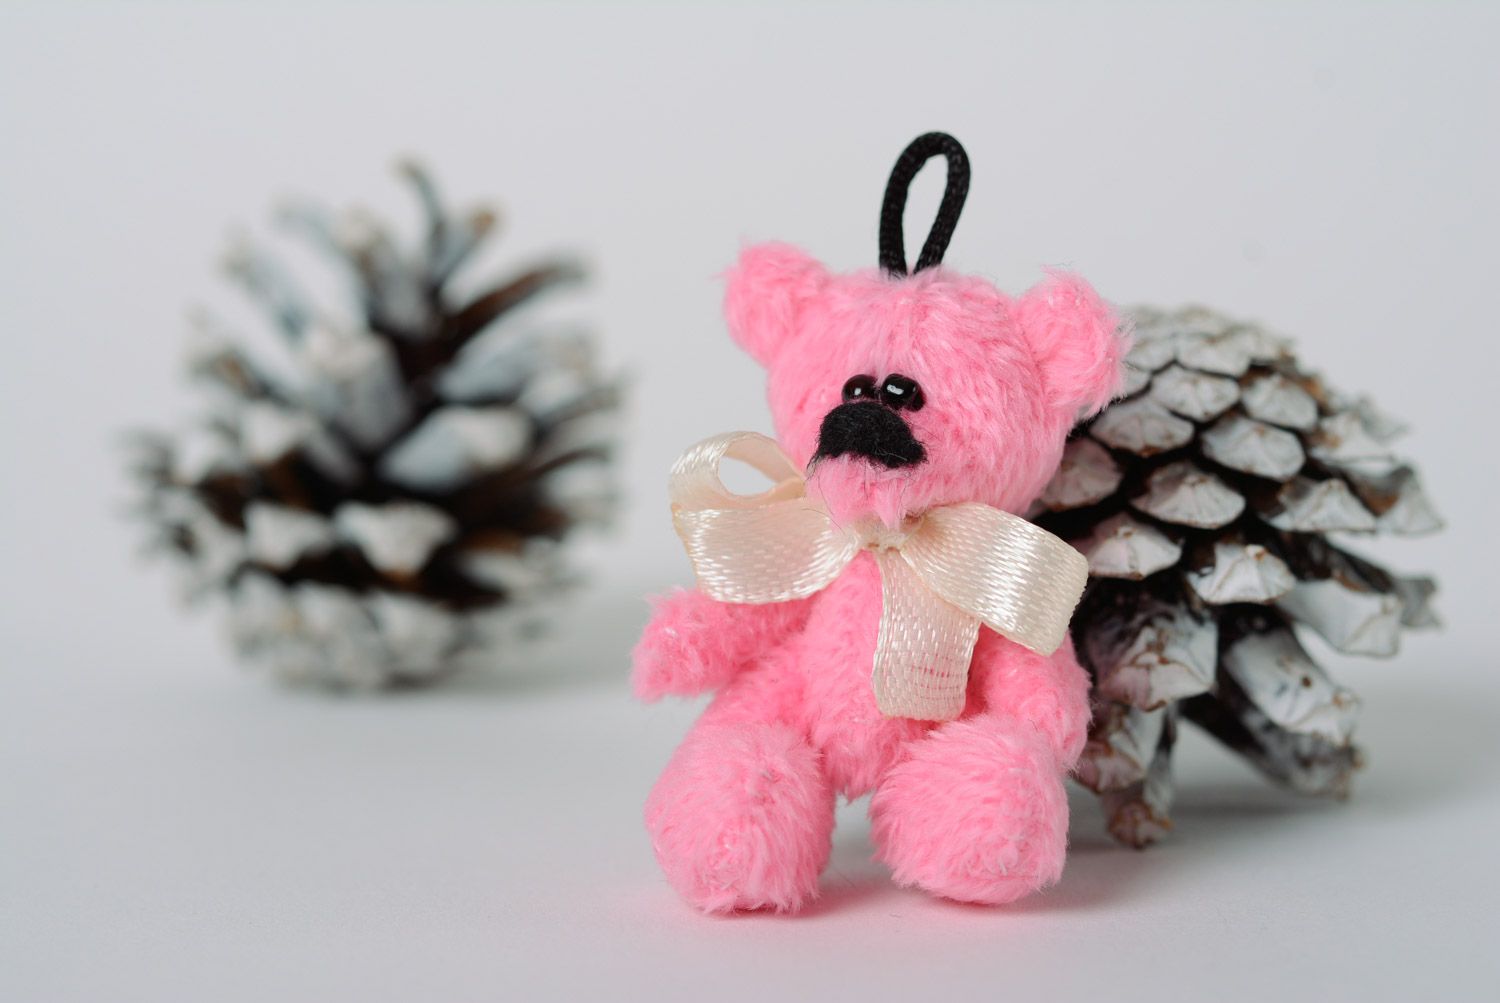 Мягкий брелок для ключей в виде игрушки медвежонка розовый красивый handmade фото 1